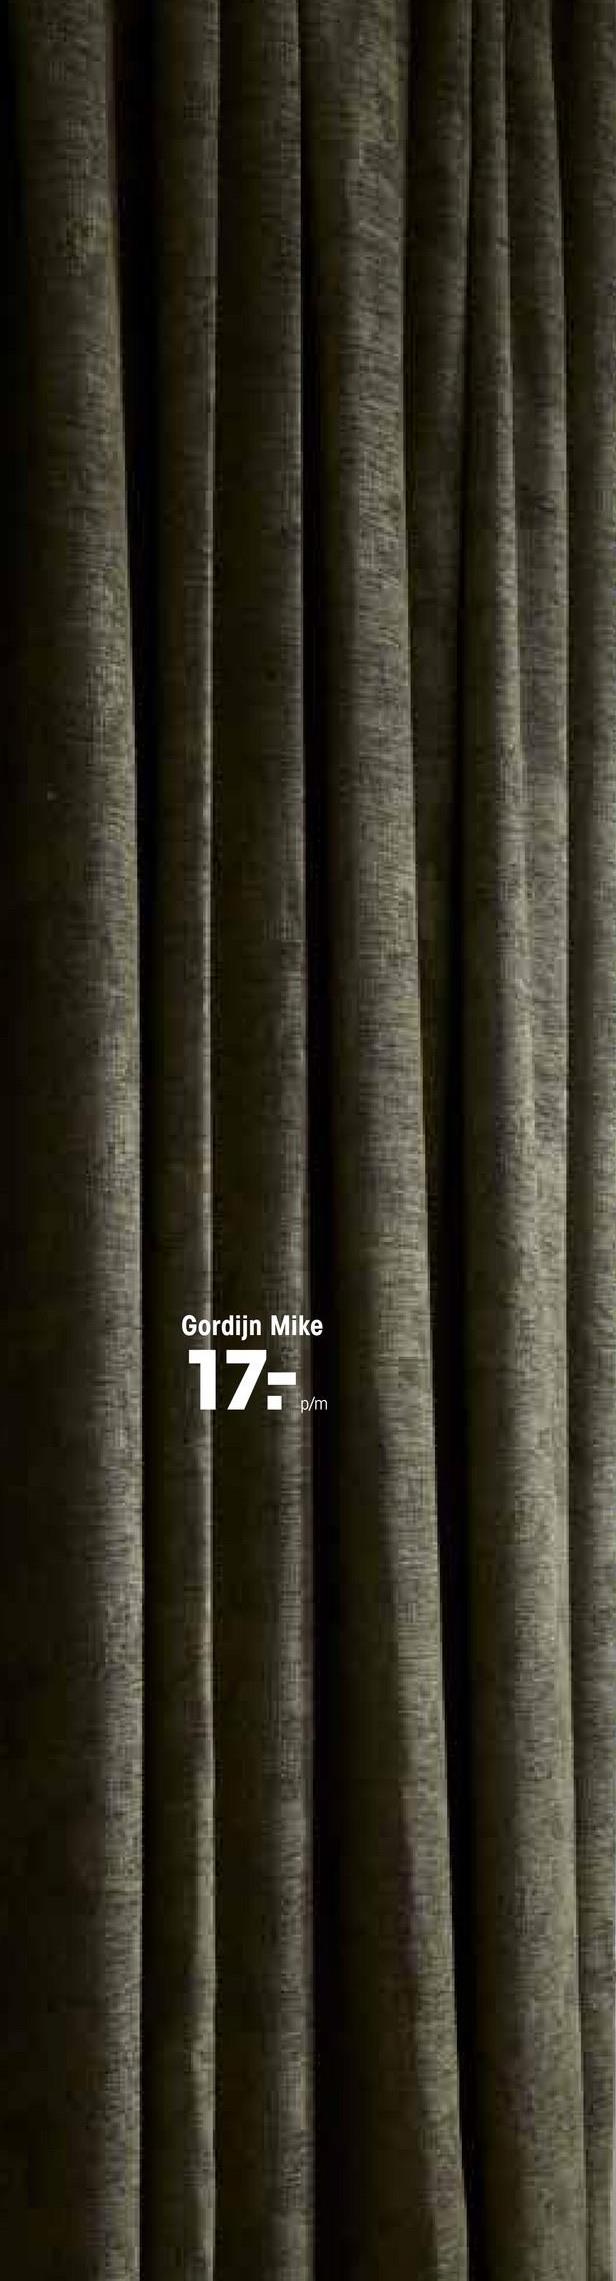 Gordijn Mike Groen Lichtdoorlatende jacquard gordijnstof groen. Deze gordijnstof heeft een stoere look en valt soepel. 138 cm breed.